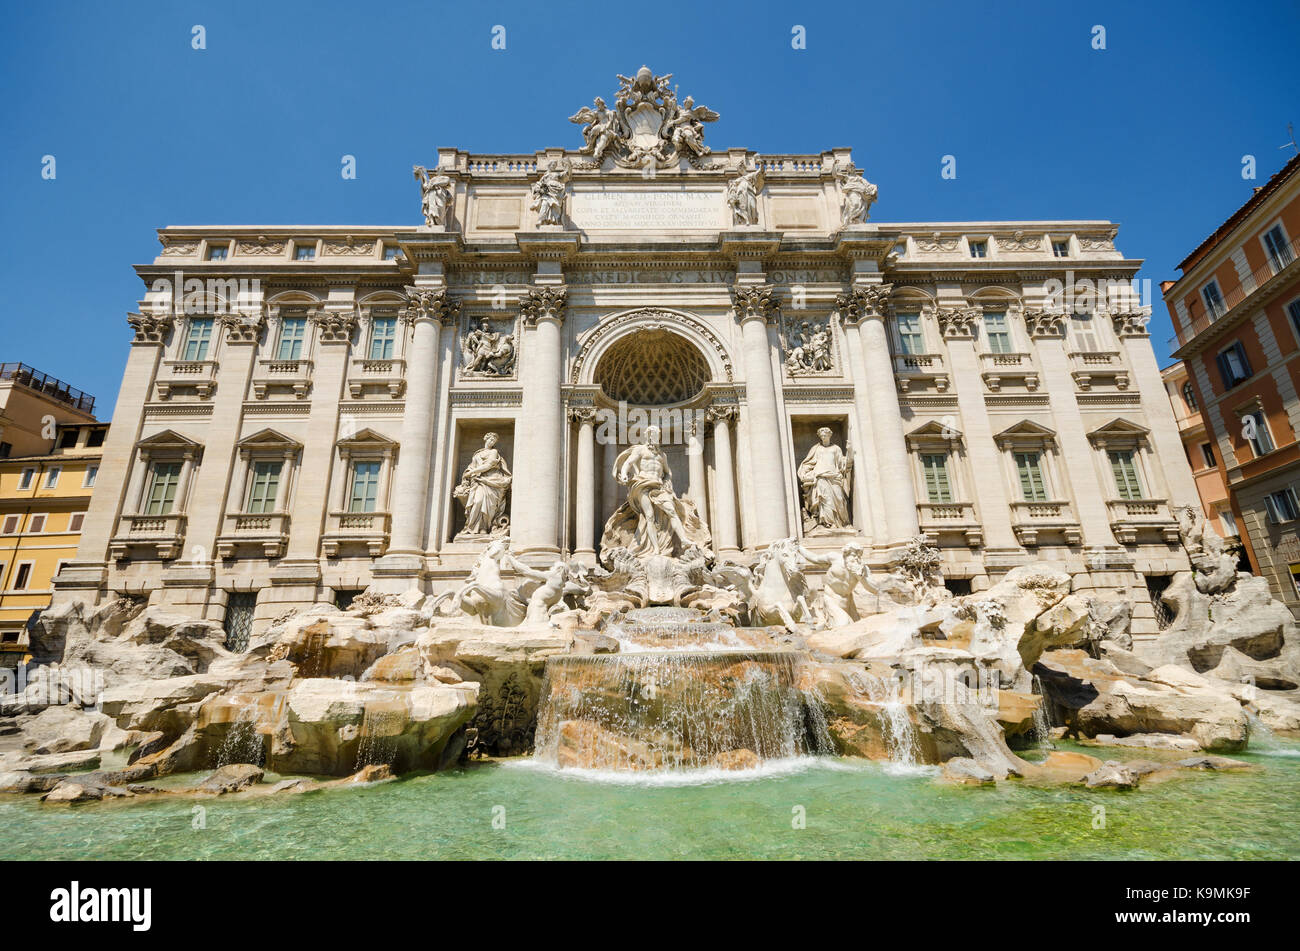 World famous Landmark Trevi Fountain. Rome, Italy. Stock Photo